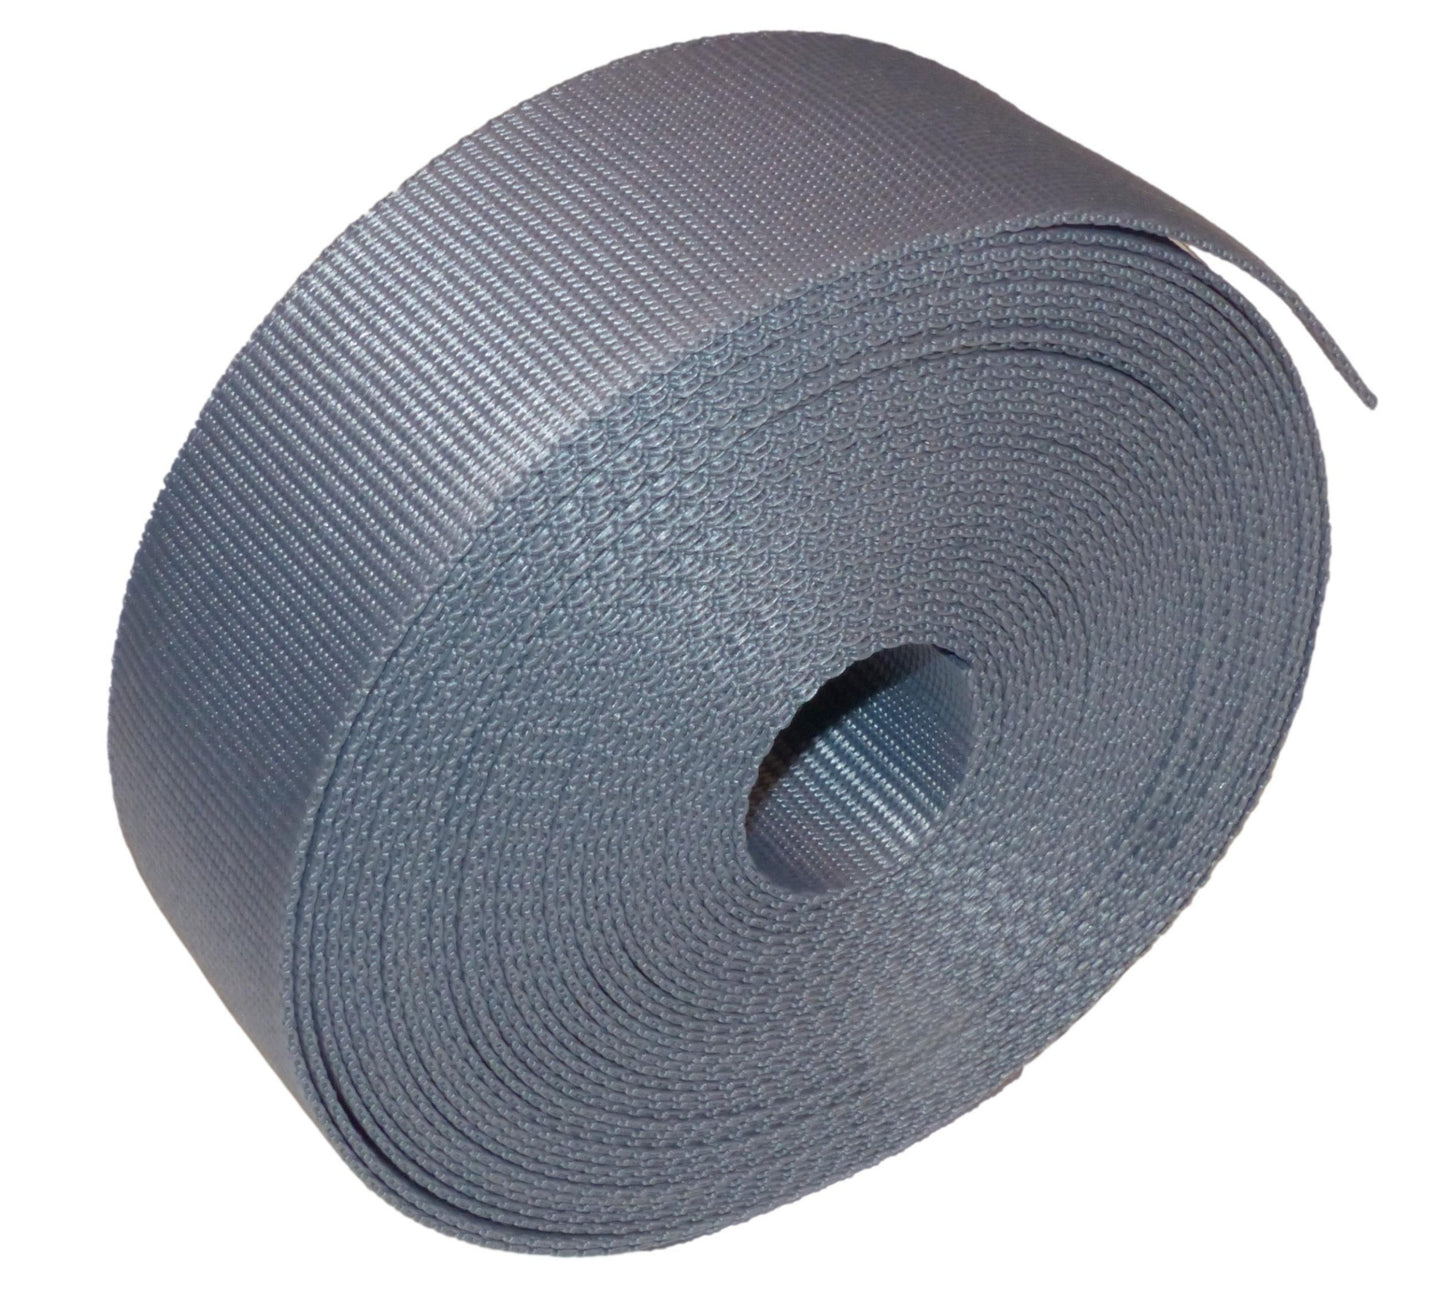 Benristraps 50mm (2") Polypropylene Webbing, 10 Metre (32') Roll in grey